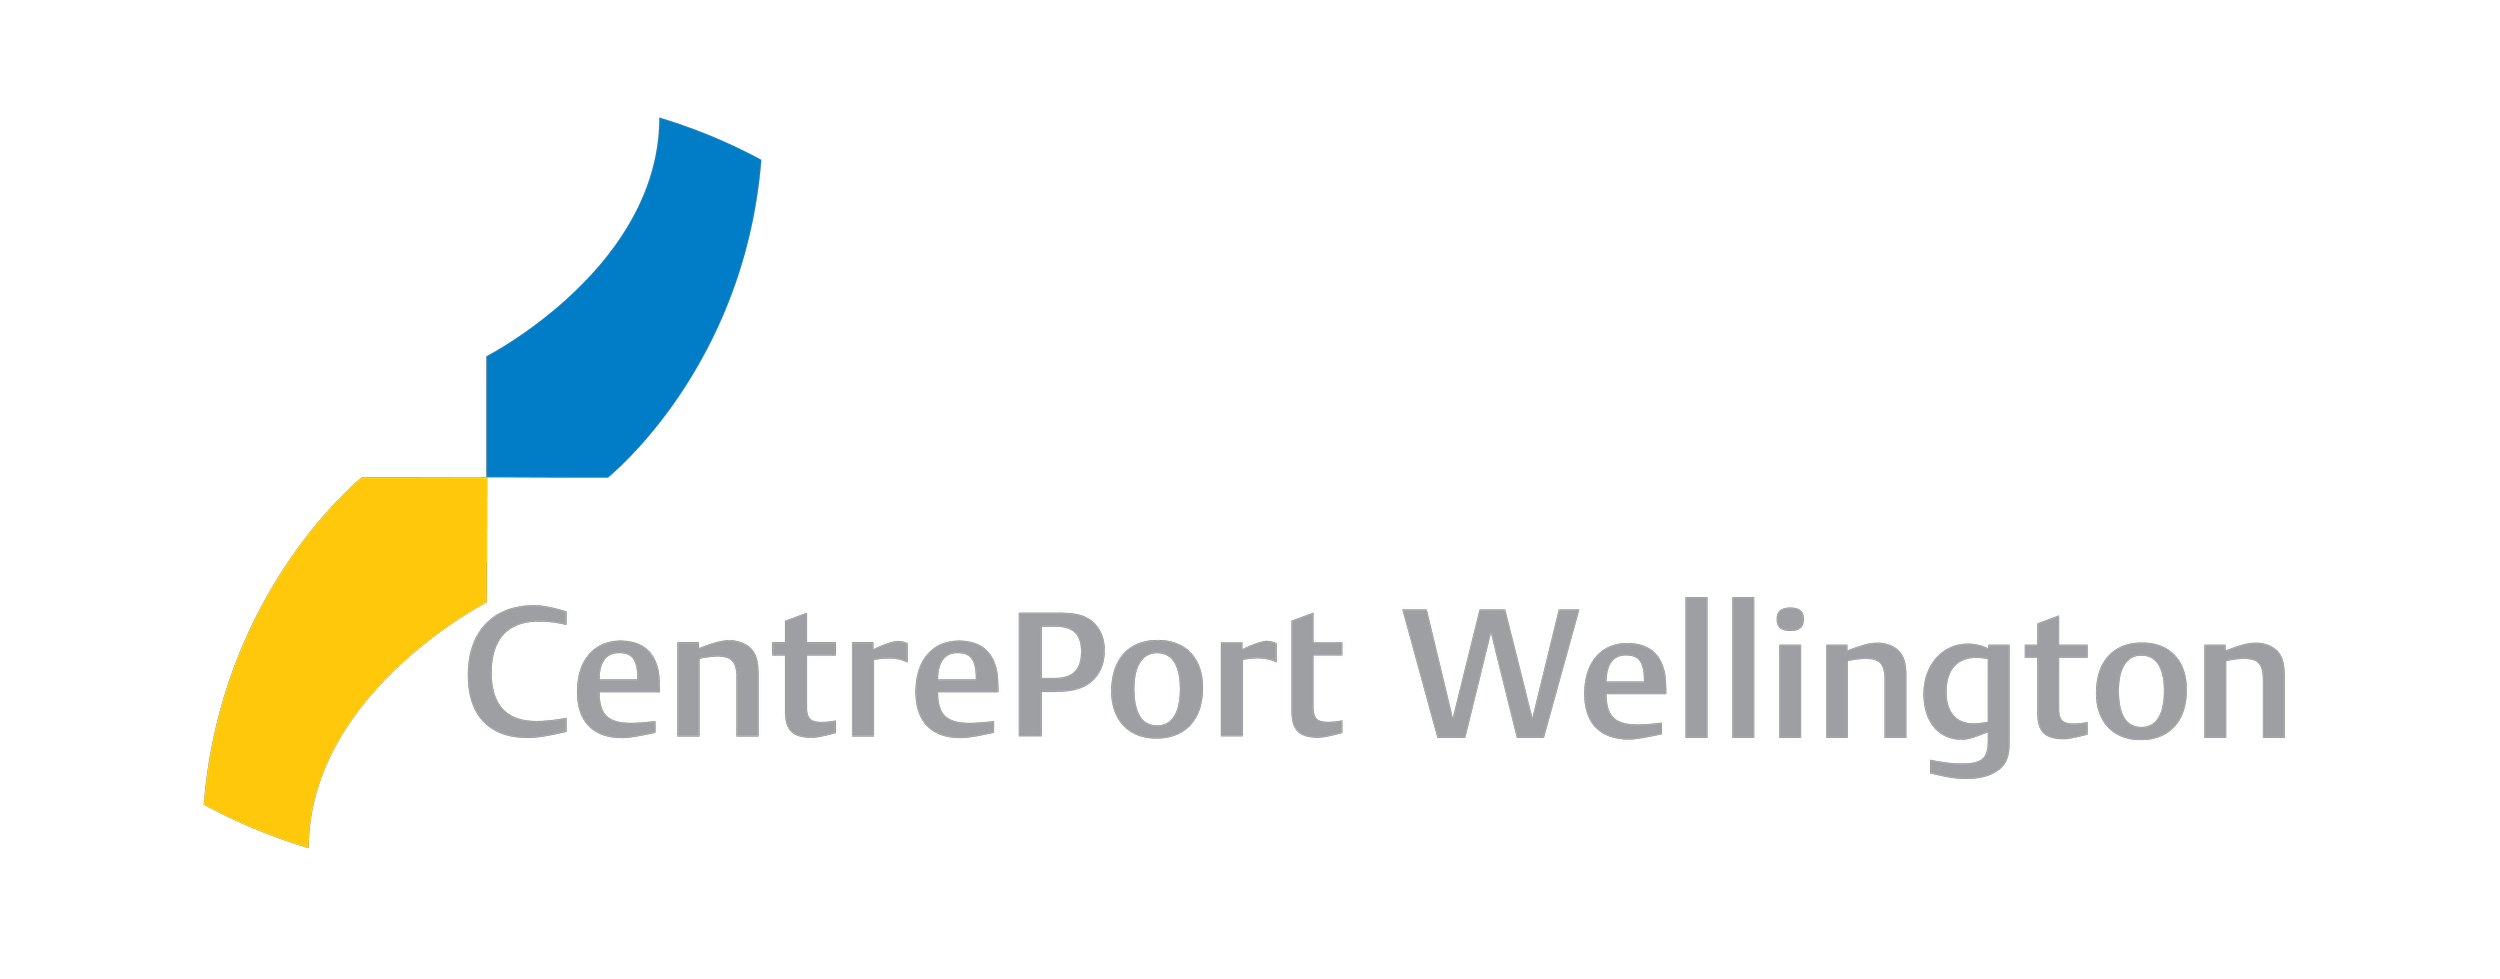 CentrePort logo transparent.png